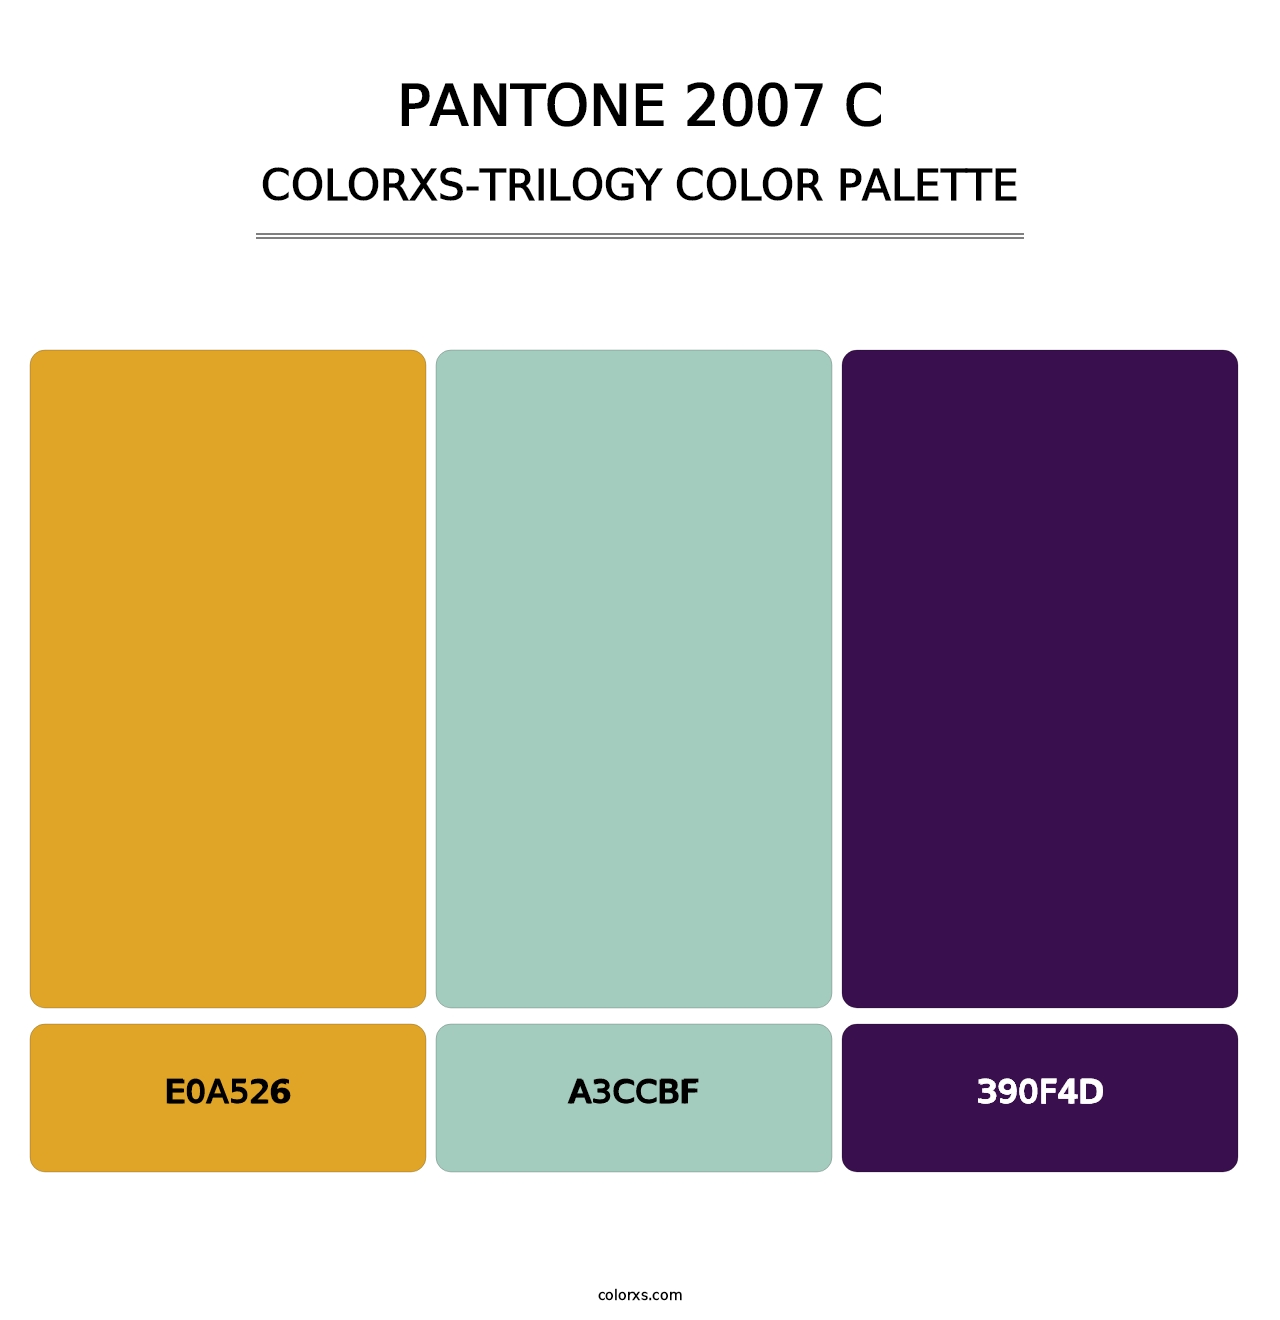 PANTONE 2007 C - Colorxs Trilogy Palette